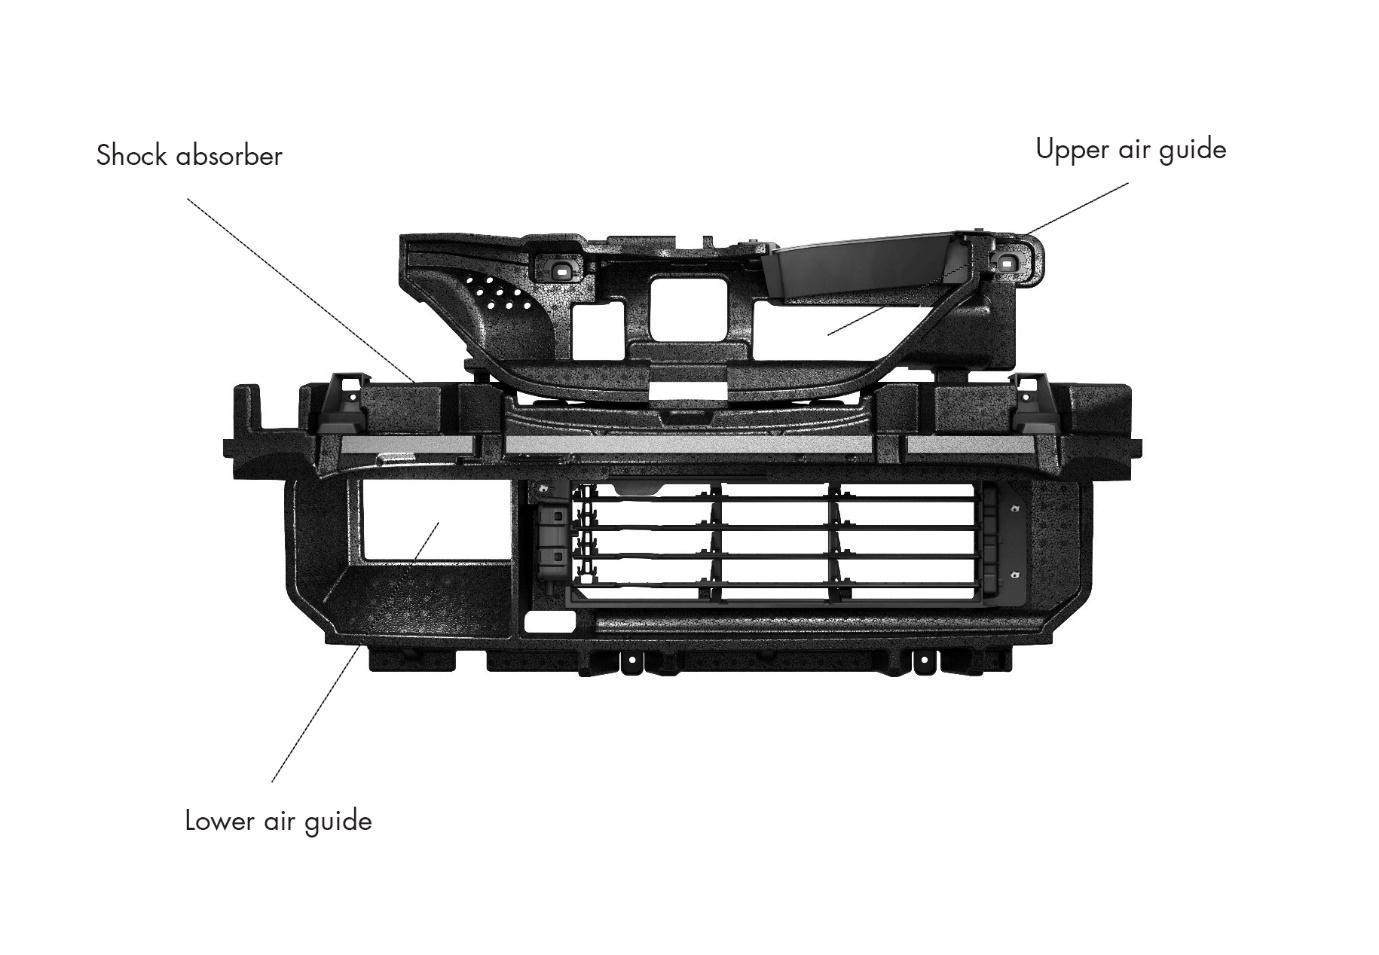 Guias de ar dianteiras do Renault Captur e amortecedor de choques dianteiro em polipropileno expandido (EPP) com acessórios.